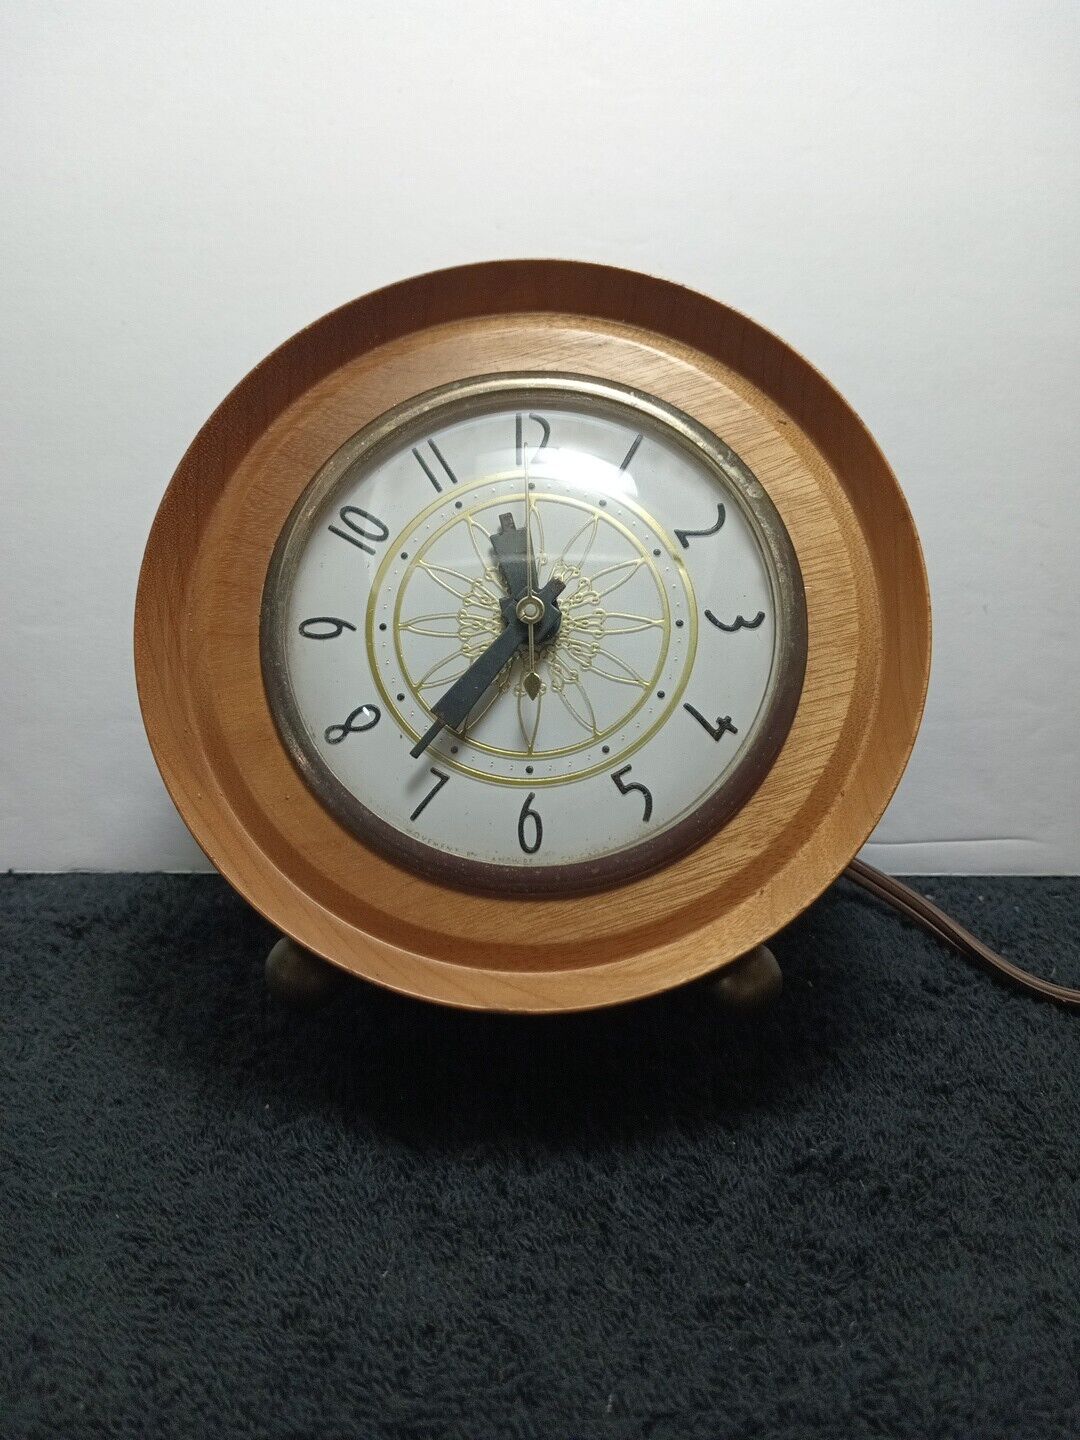 Vintage Oregon Myrtlewood Clock - Myrtle Craft Studio. Tested, Works Well.